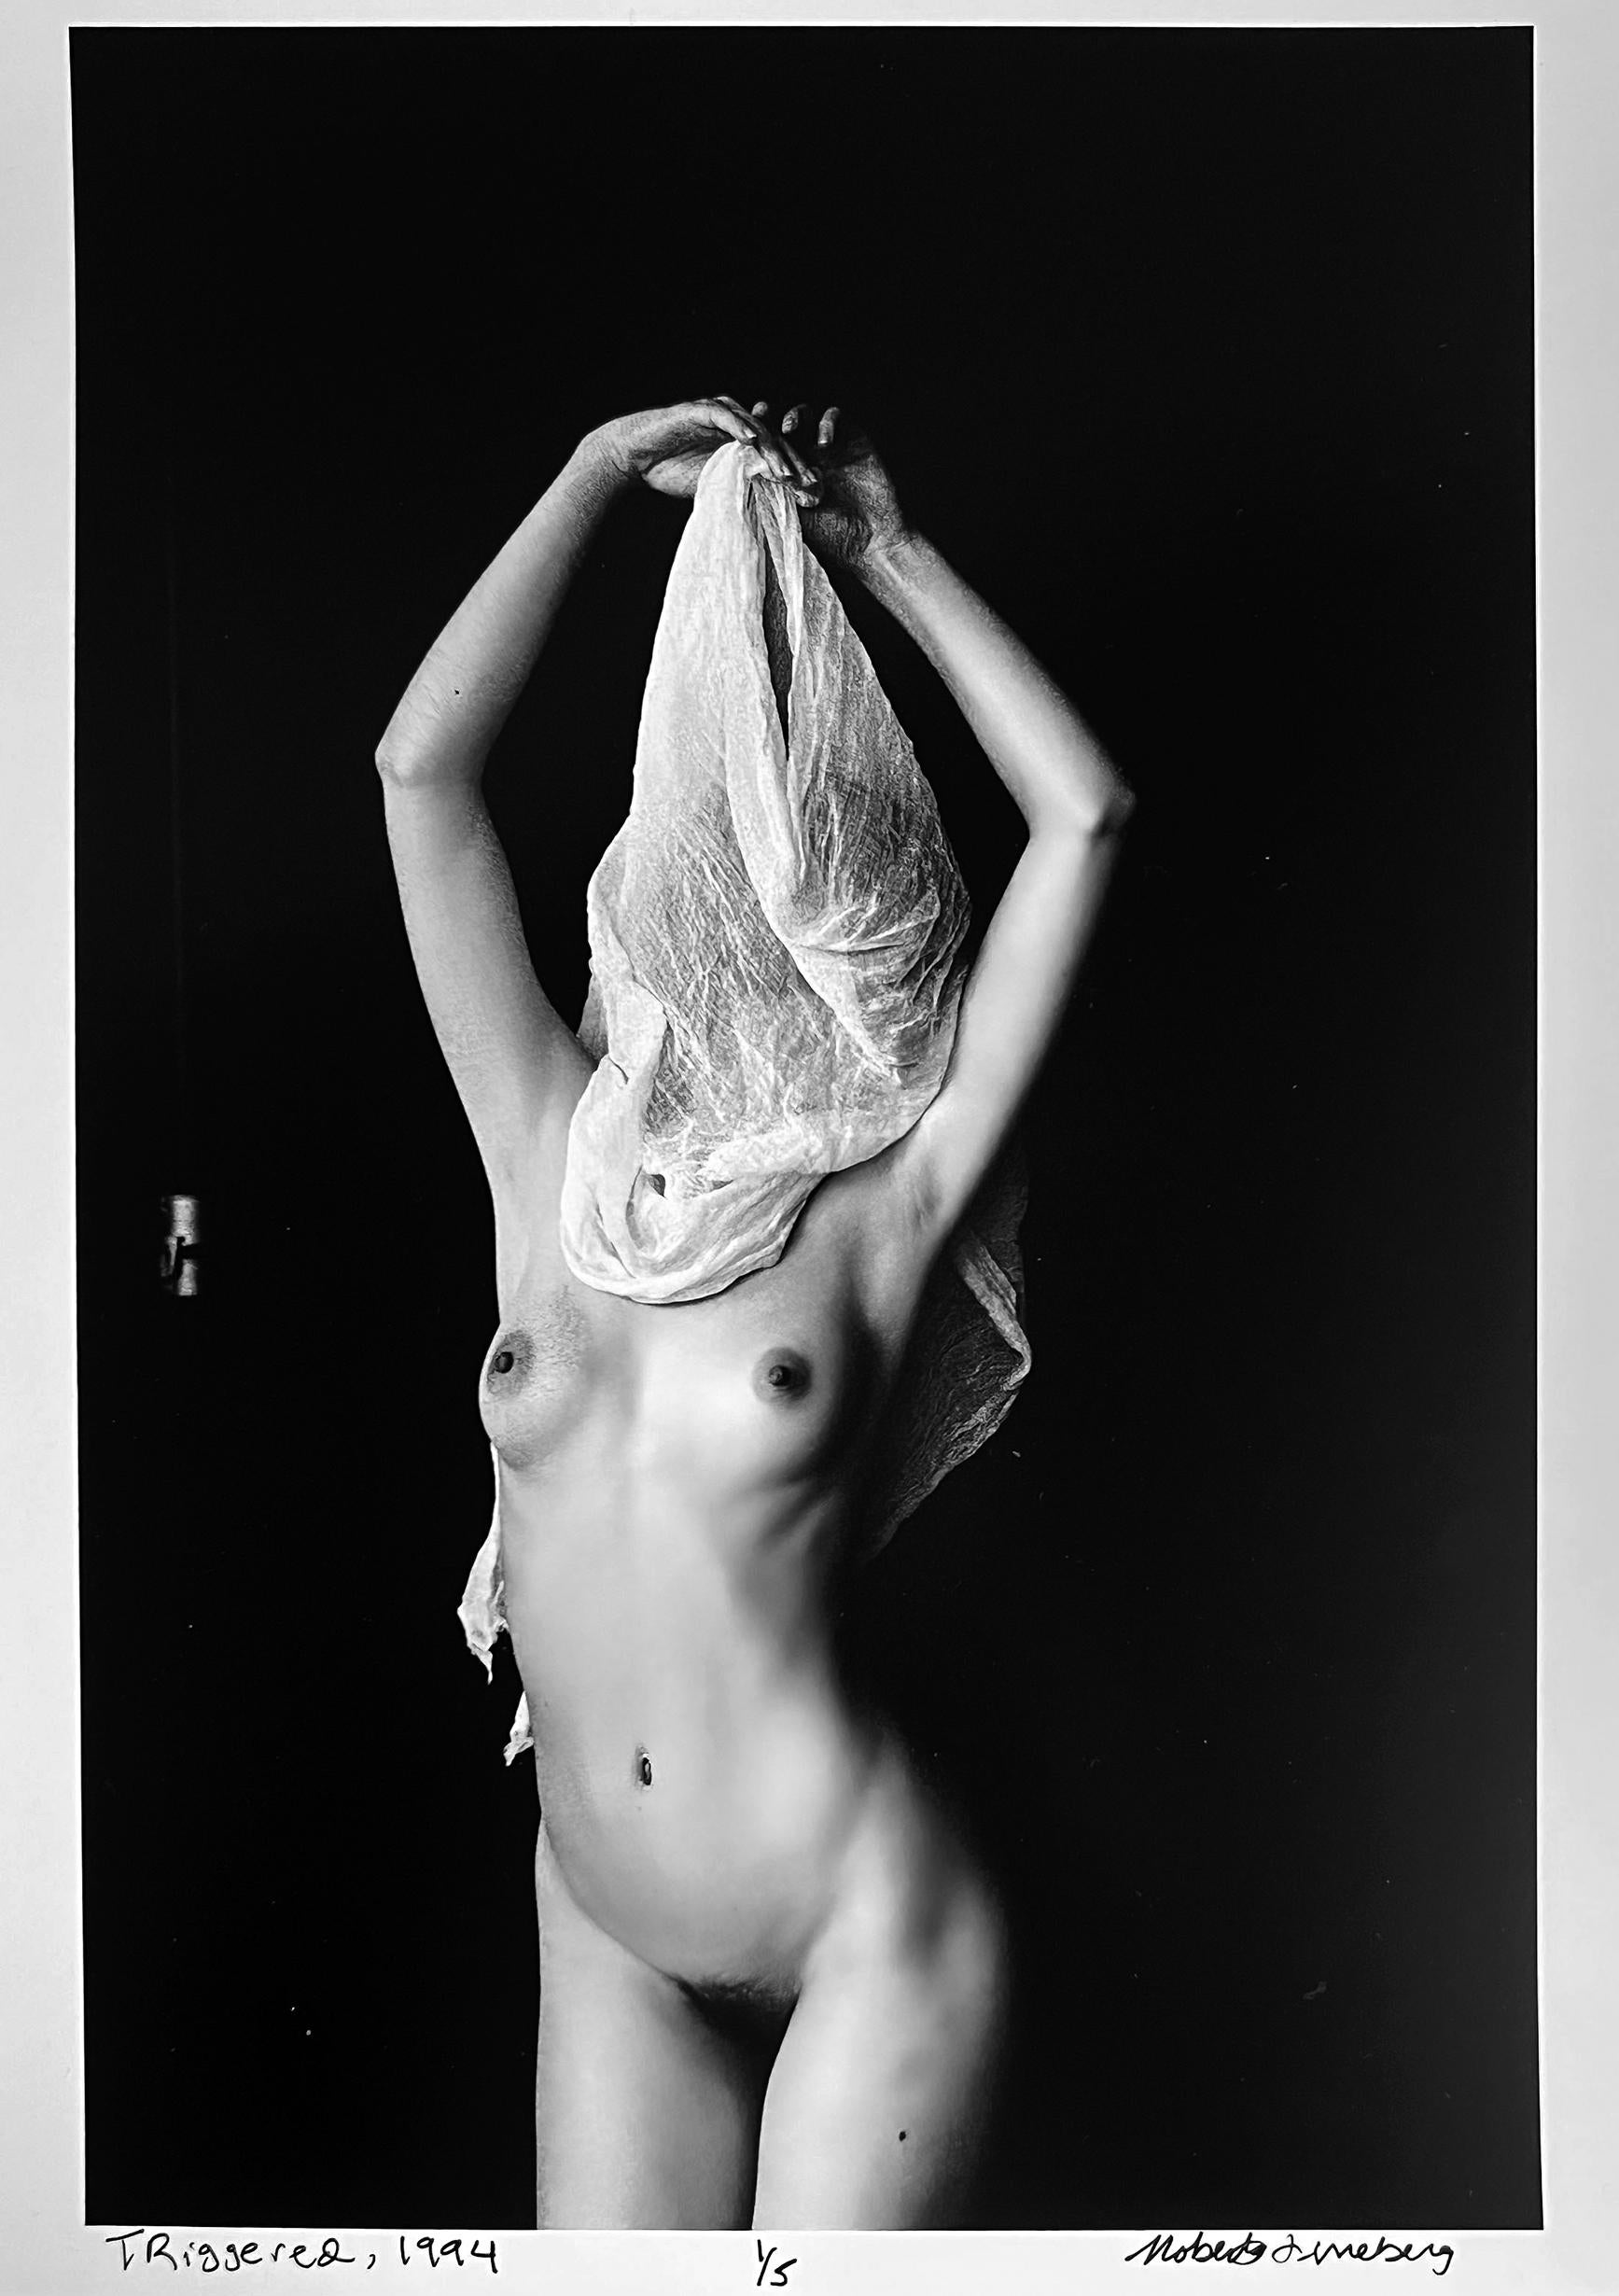 Whiting, photographie en noir et blanc d'un nu féminin dans la ville de New York